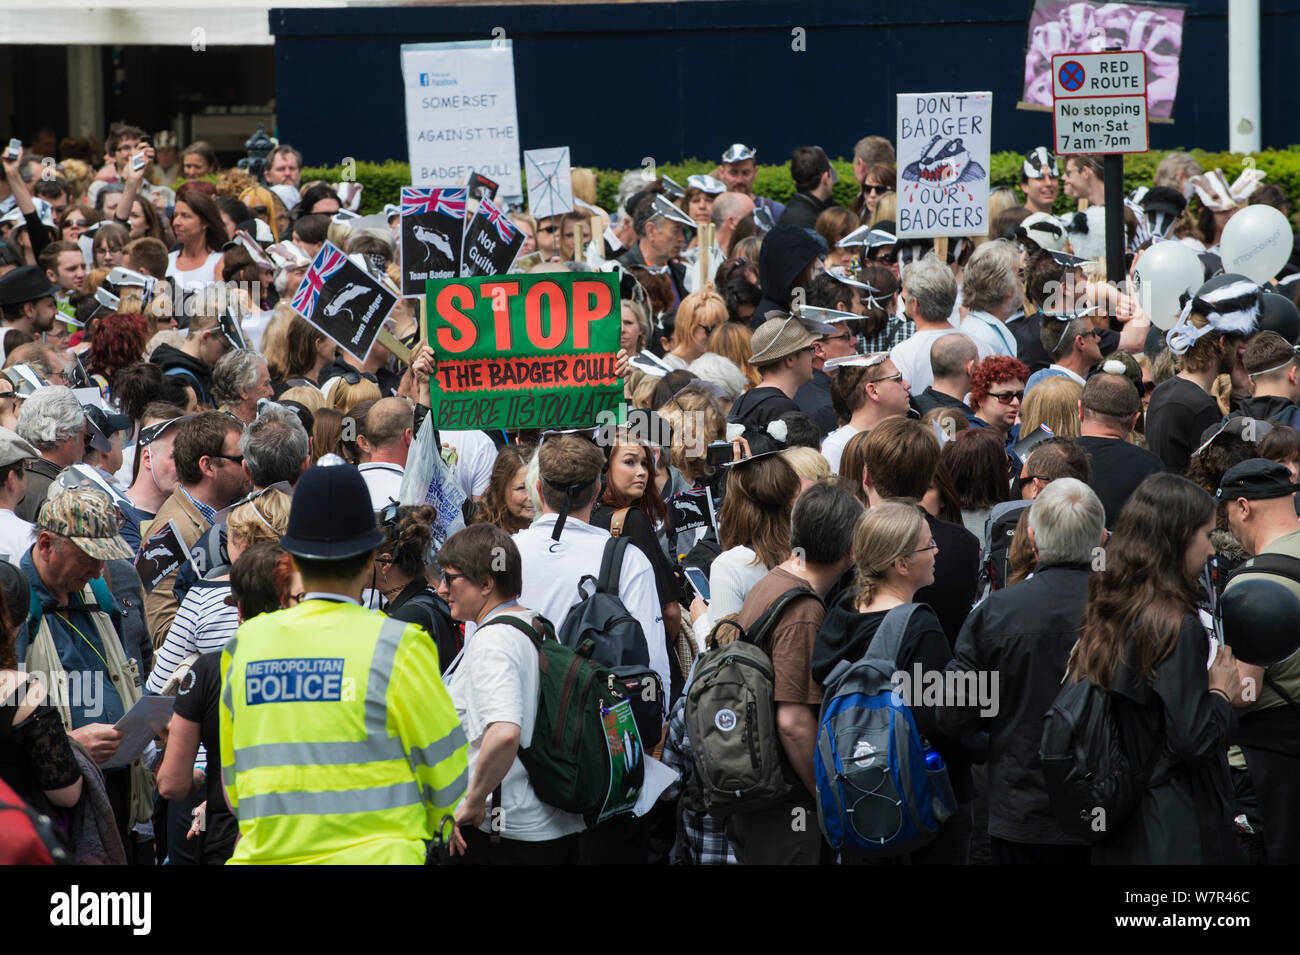 Des groupes de personnes et d'agent de police à l'abattage du blaireau mars, Londres, 1er juin 2013 Banque D'Images